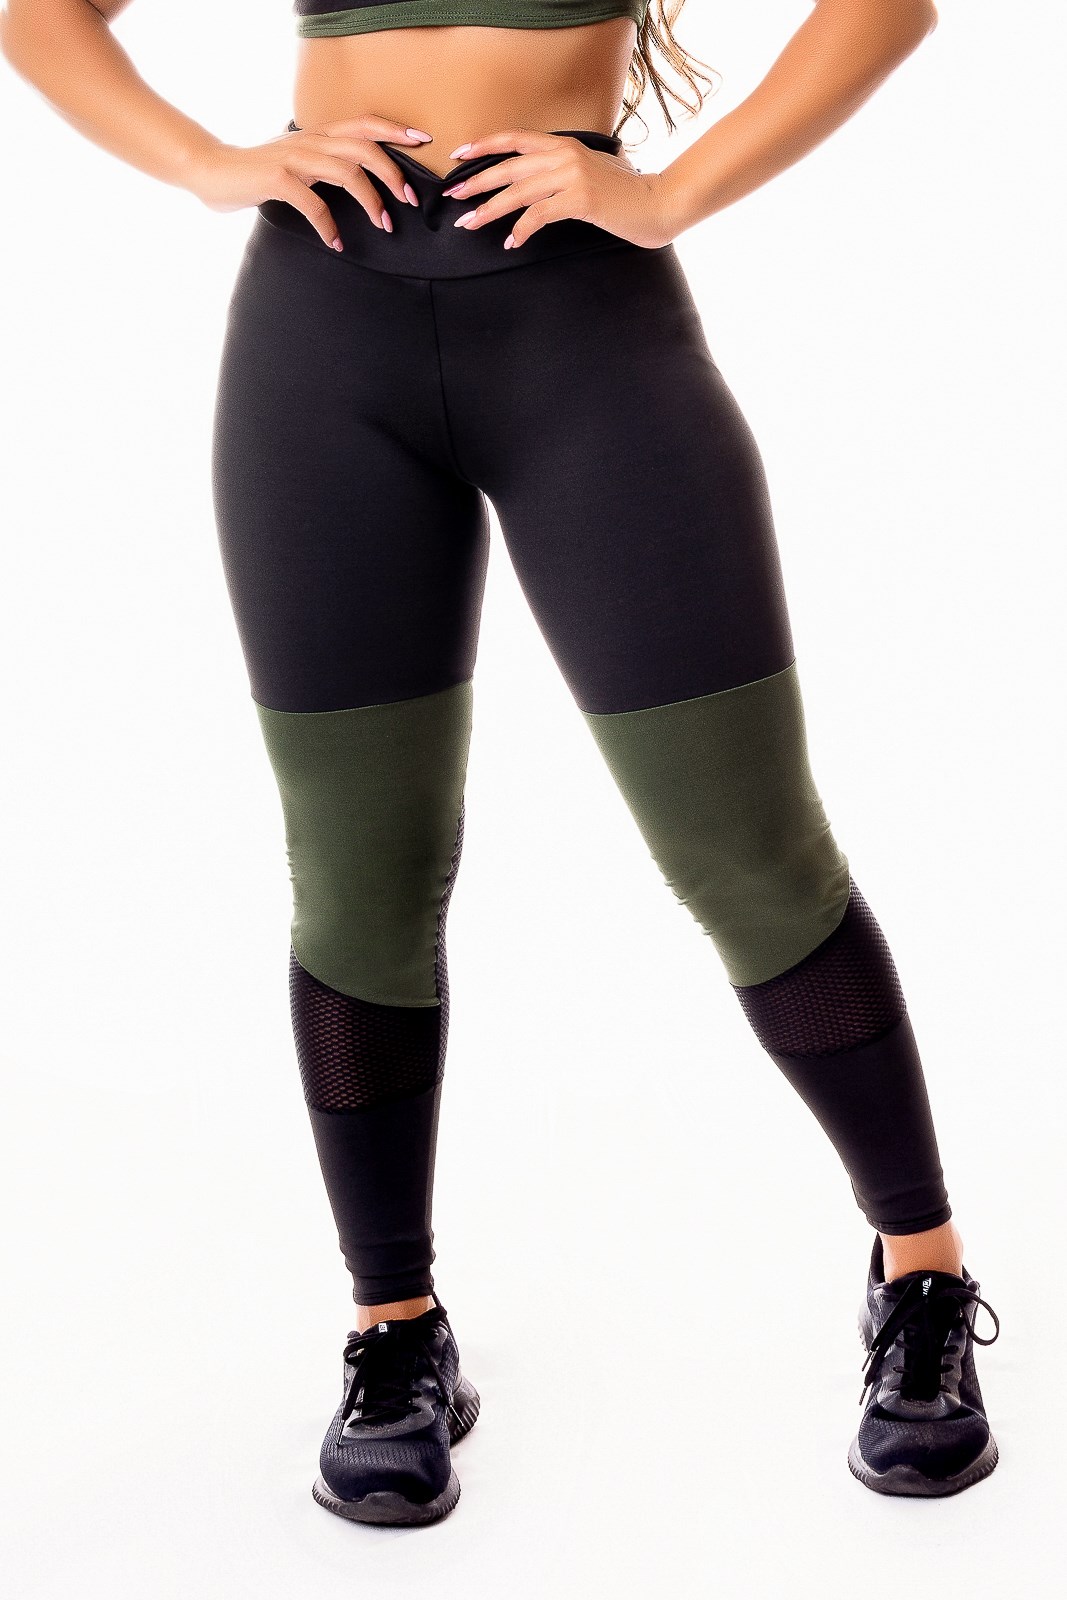 Calça Legging Fitness Academia Preta com Verde Militar e Detalhe em Tela  Dry Fit Cintura Alta REF: SV14